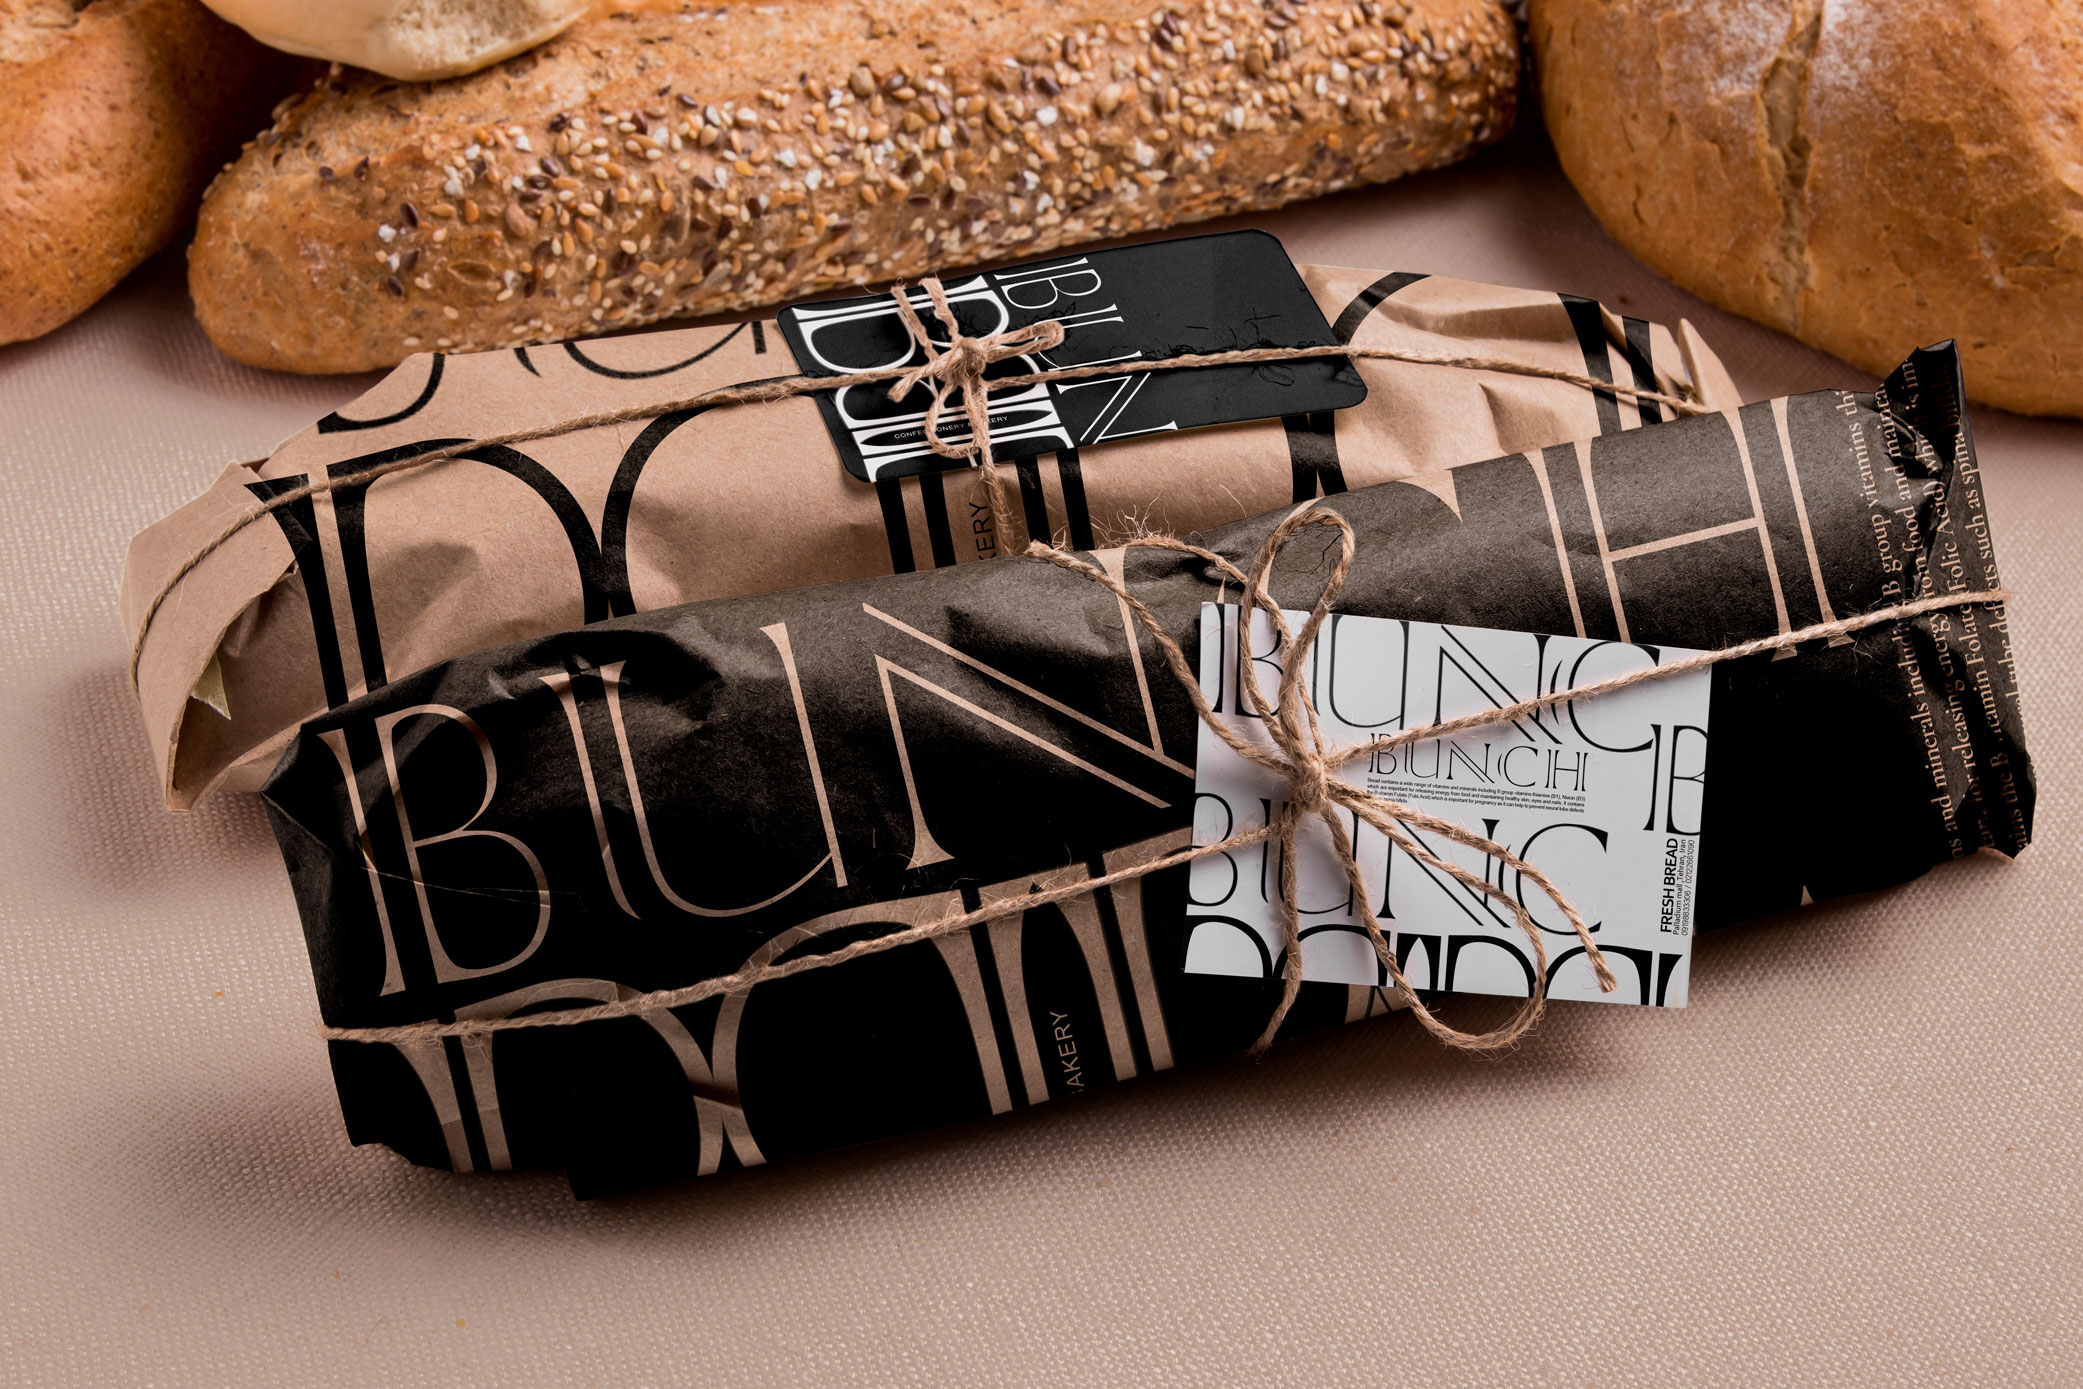 品牌包装设计分享——Bunch Bakery